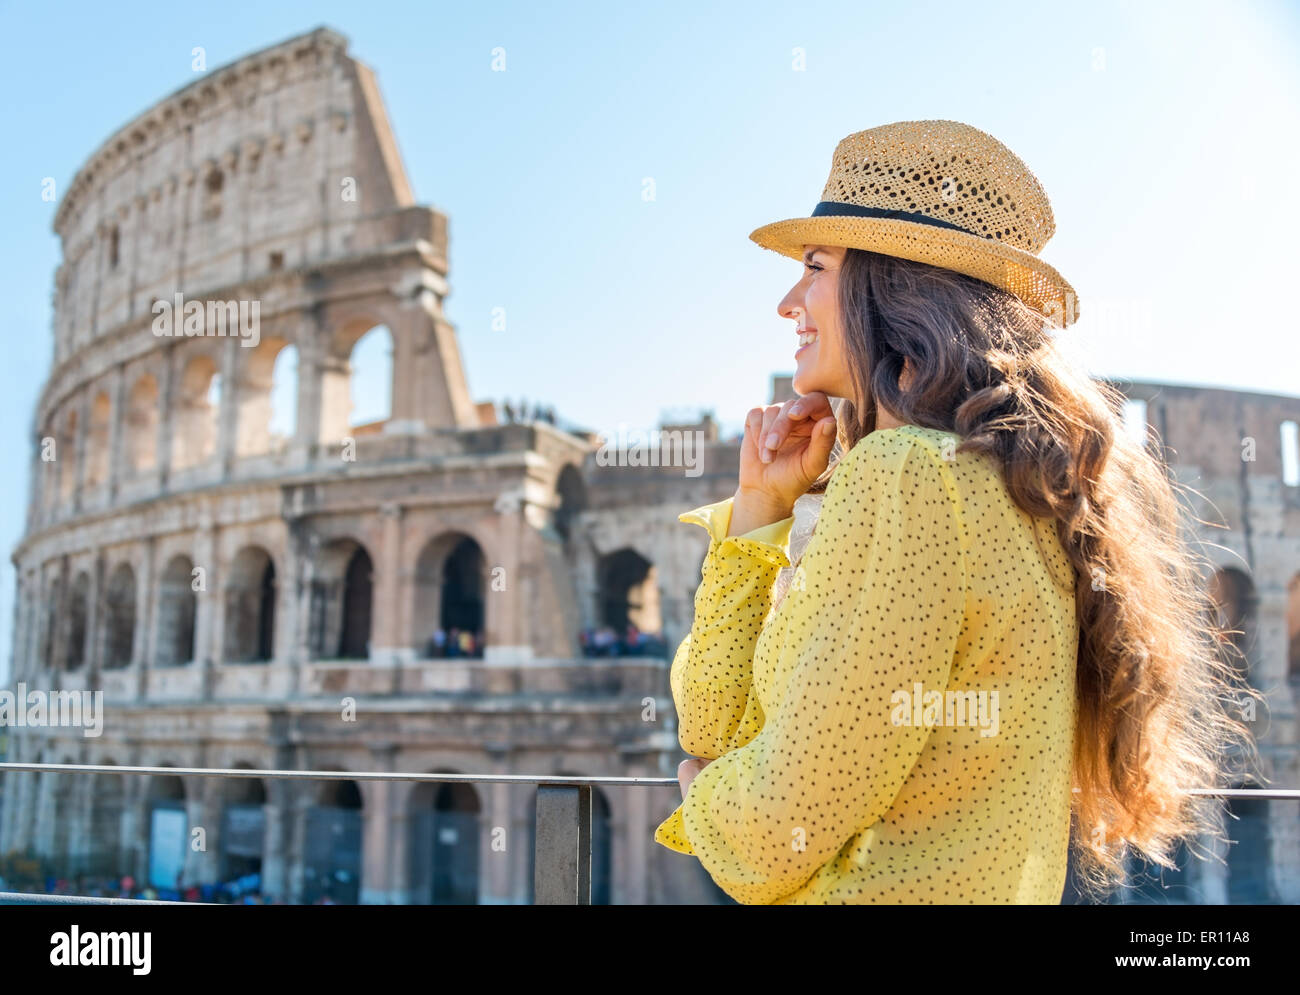 Eine Frau Tourist ist stehend, stützte sich ihr Kinn auf ihre Hände und Blick in die Ferne und lächelnd. Sie ist die Aussicht bewundern. In der Ferne, das Kolosseum an einem heißen Sommertag. Stockfoto